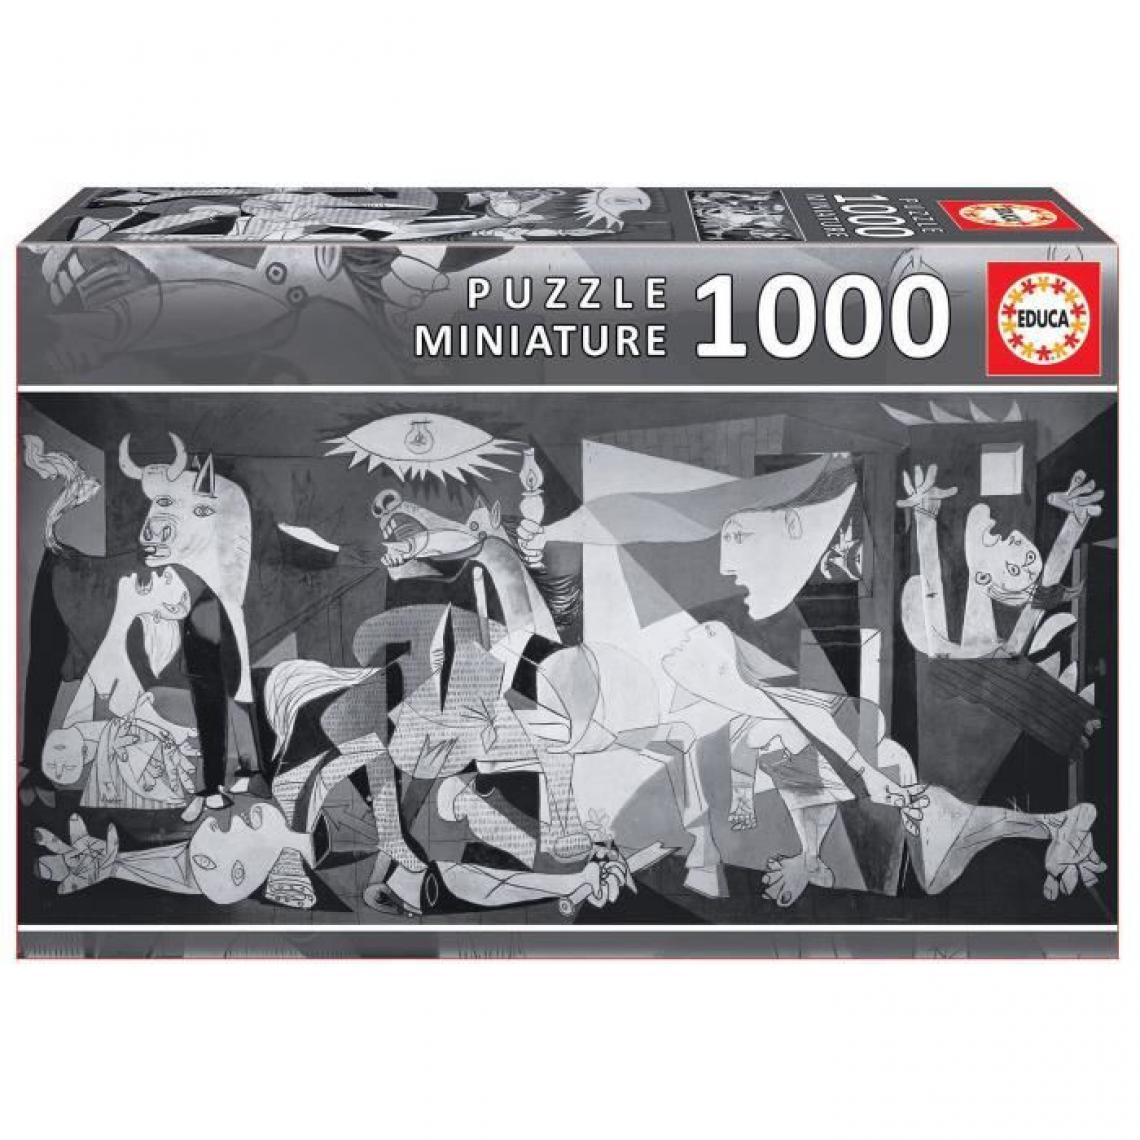 Educa - EDUCA - Puzzle GUERNICA miniature 1000 pieces - Animaux